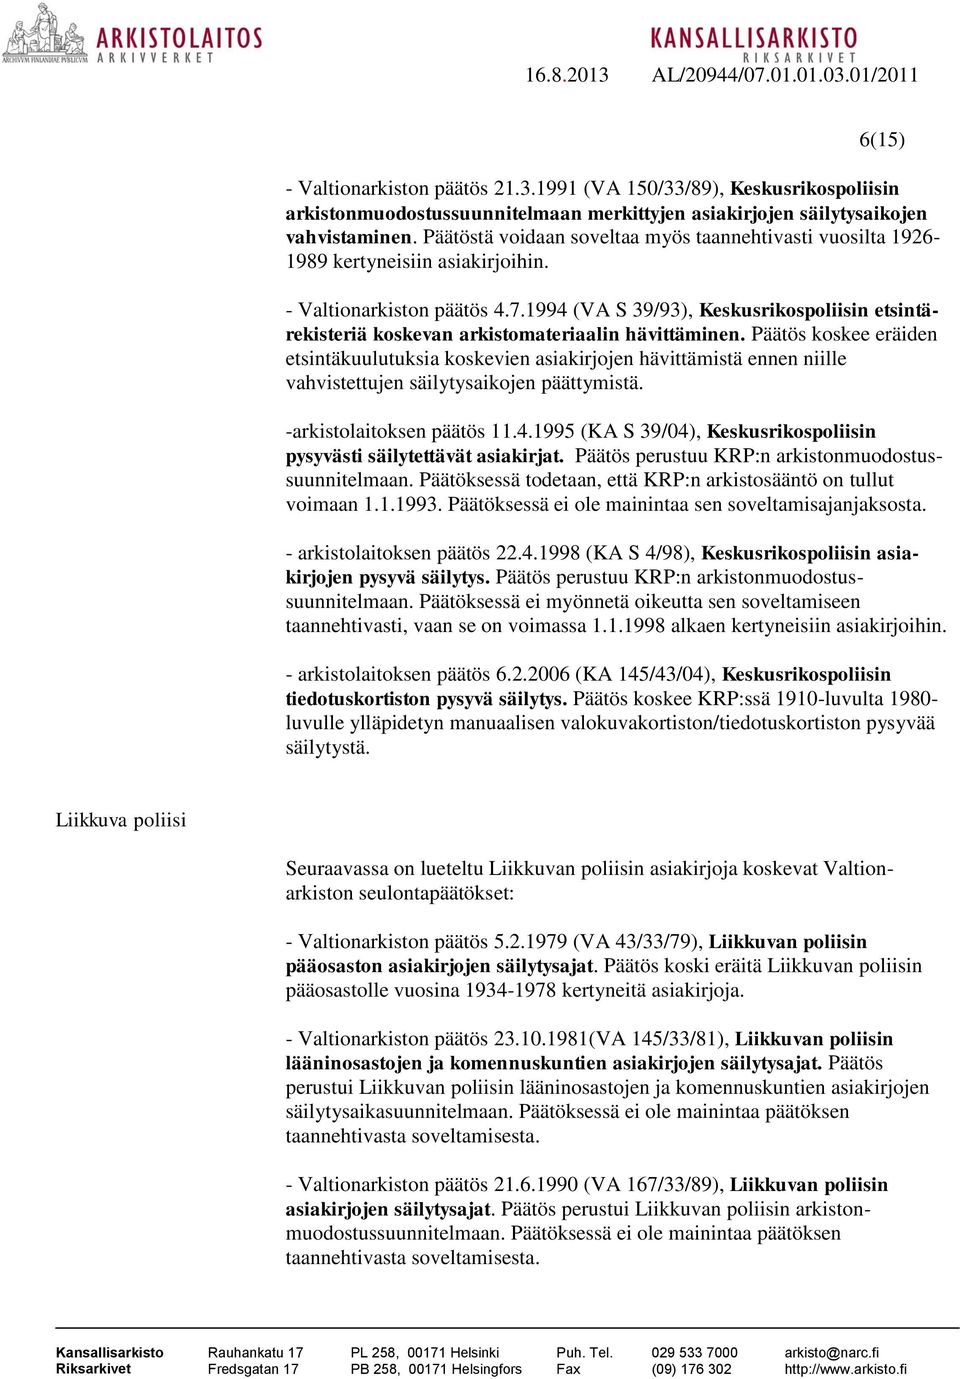 1994 (VA S 39/93), Keskusrikospoliisin etsintärekisteriä koskevan arkistomateriaalin hävittäminen.